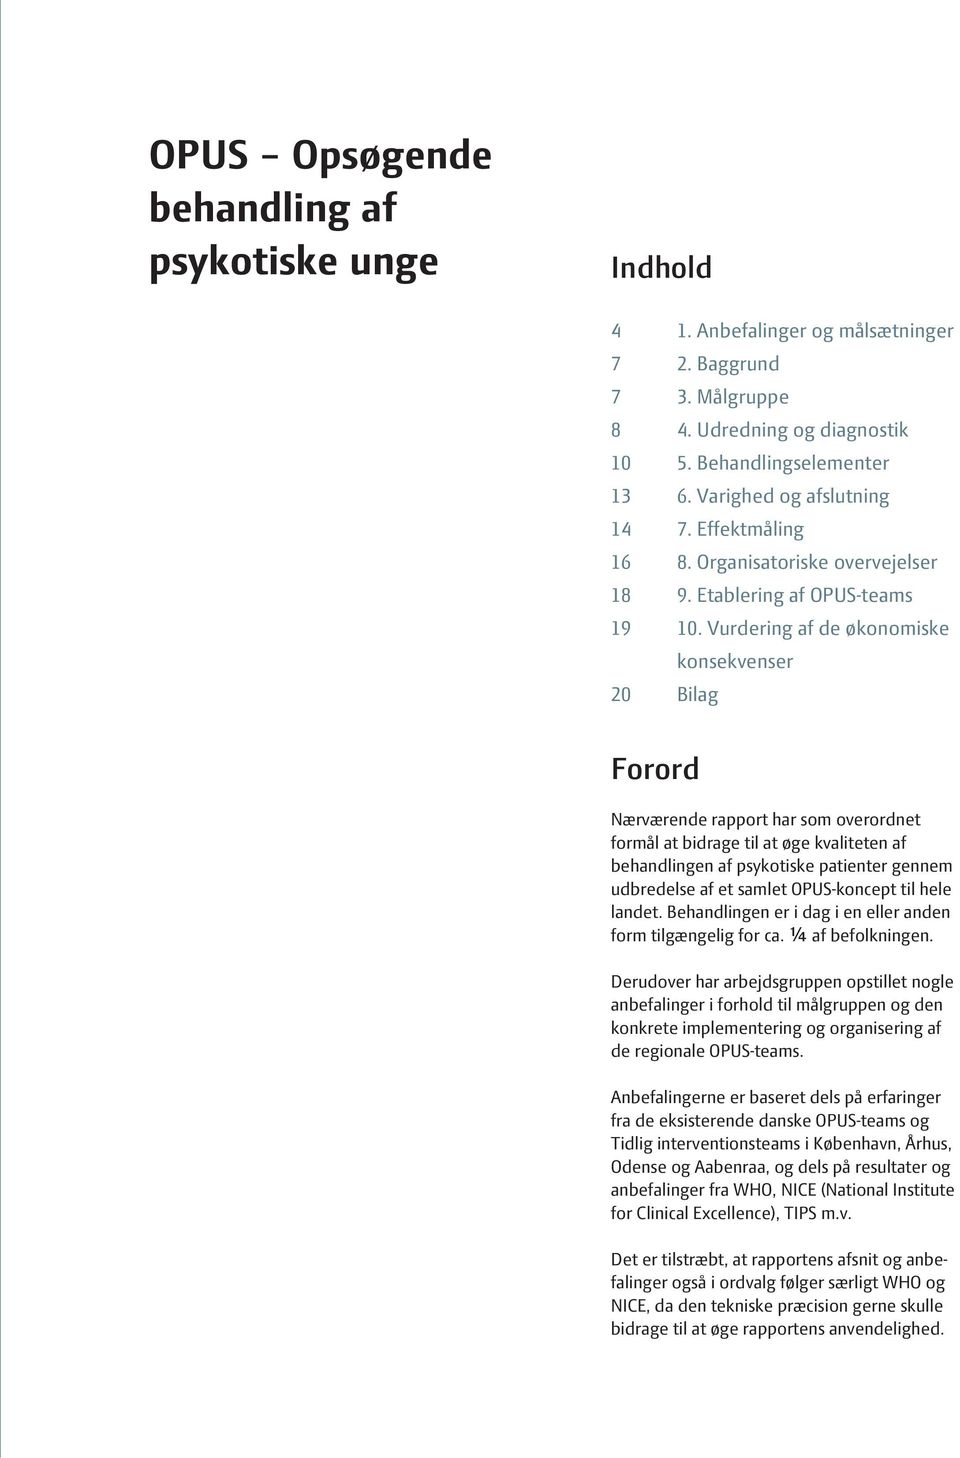 Vurdering af de økonomiske konsekvenser 20 Bilag Forord Nærværende rapport har som overordnet formål at bidrage til at øge kvaliteten af behandlingen af psykotiske patienter gennem udbredelse af et